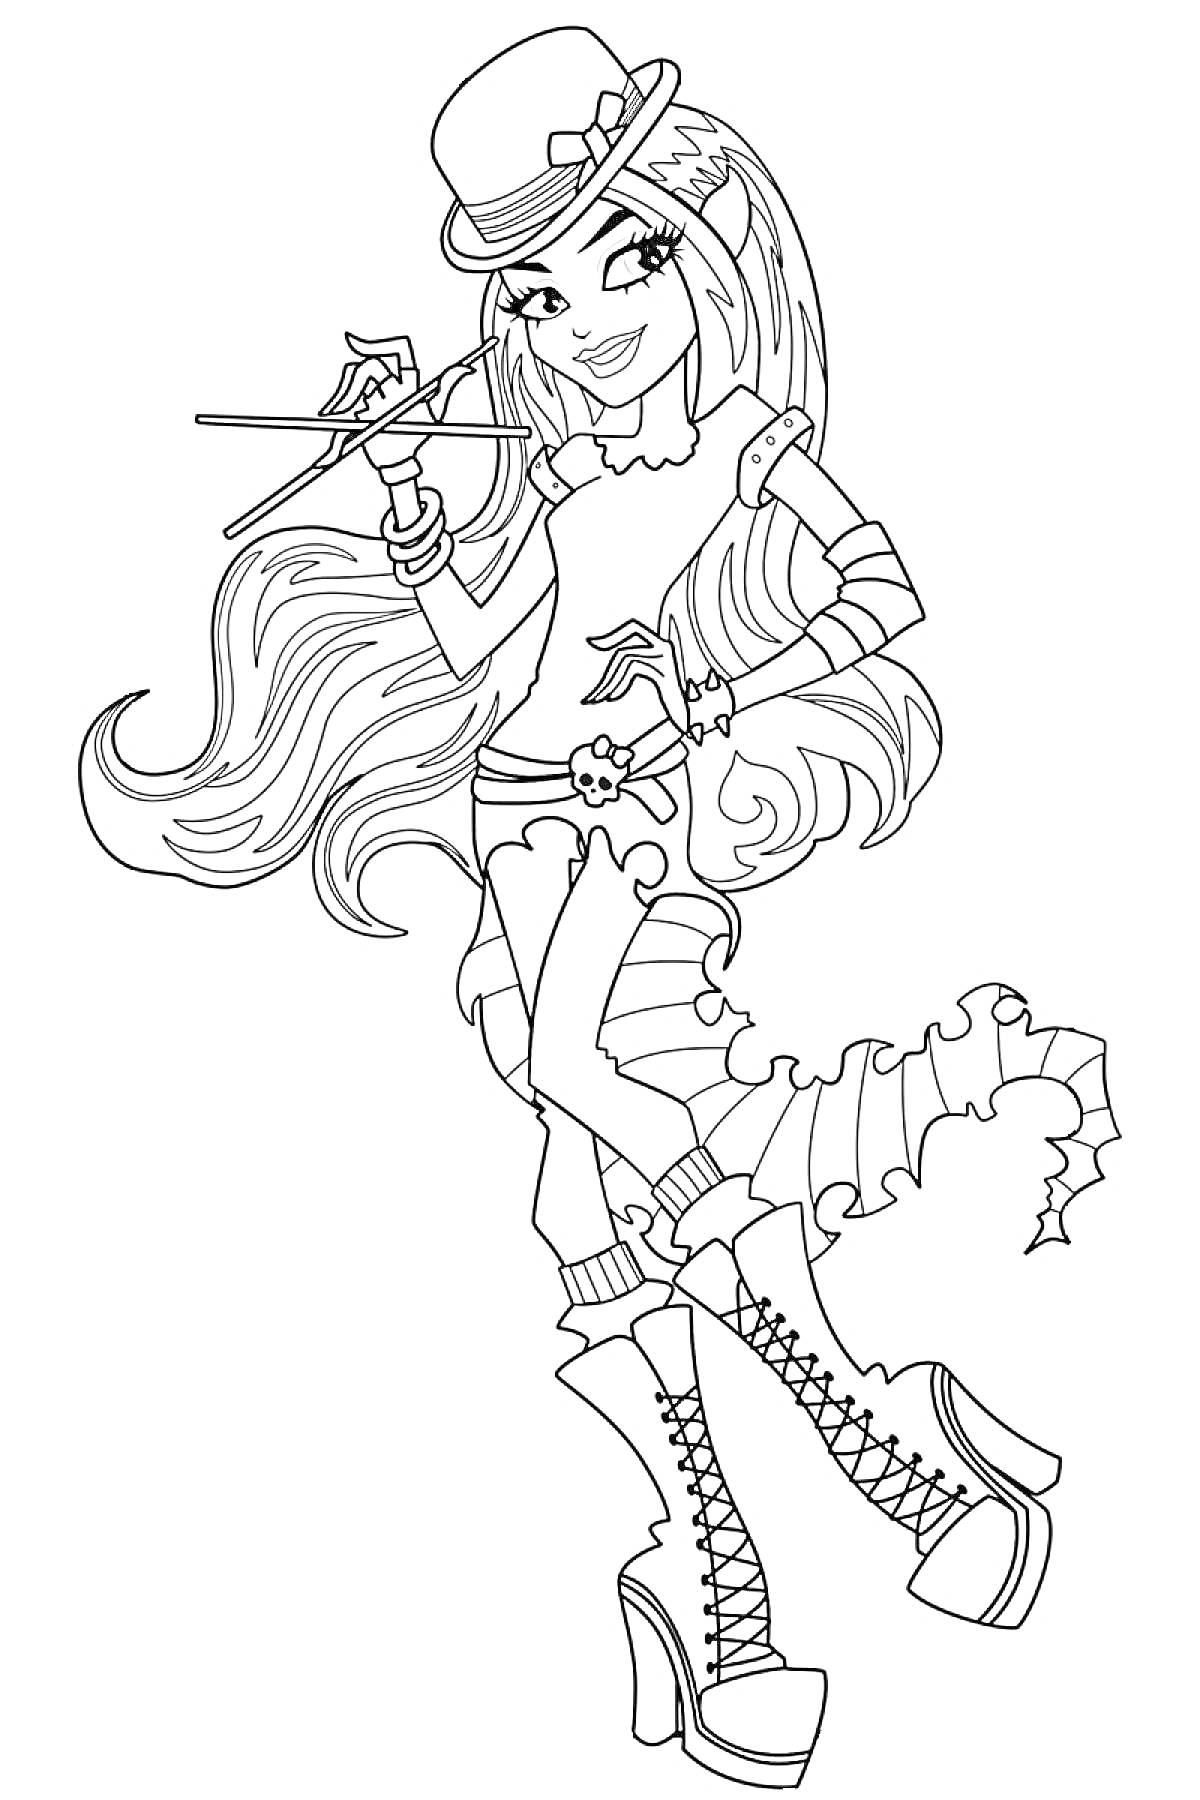 Раскраска Девушка из Монстр Хай в шляпе с длинными волосами, в сапогах на каблуке и с волшебной палочкой в руке